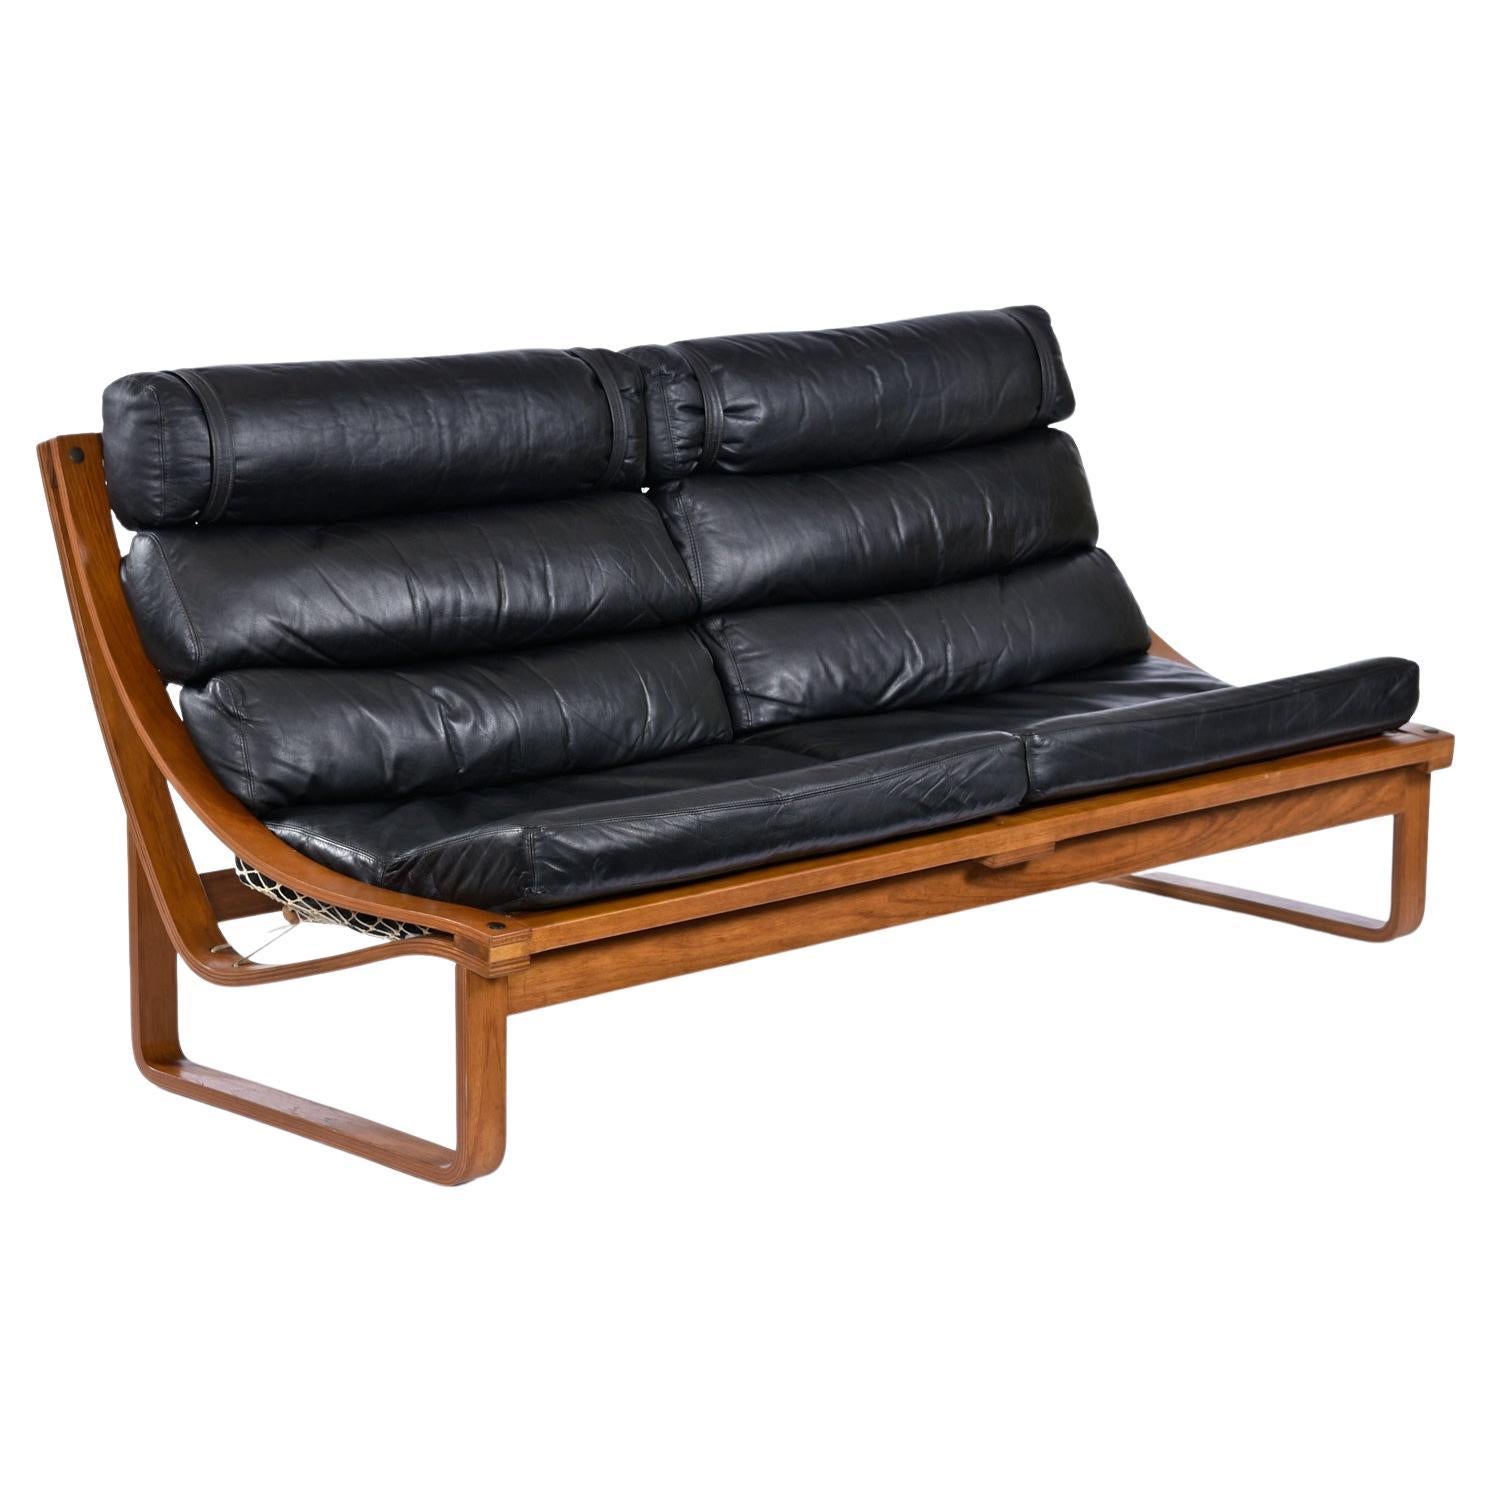 Bei diesem T4-Sofa trifft niedriges Profil auf hohen Komfort ohne Kompromisse. Dieses besondere Stück stammt aus den frühen 70er Jahren und wurde von Fred Lowen für Tessa Furniture entworfen. Die geschwungenen, gebogenen Teakholzschienen sind der